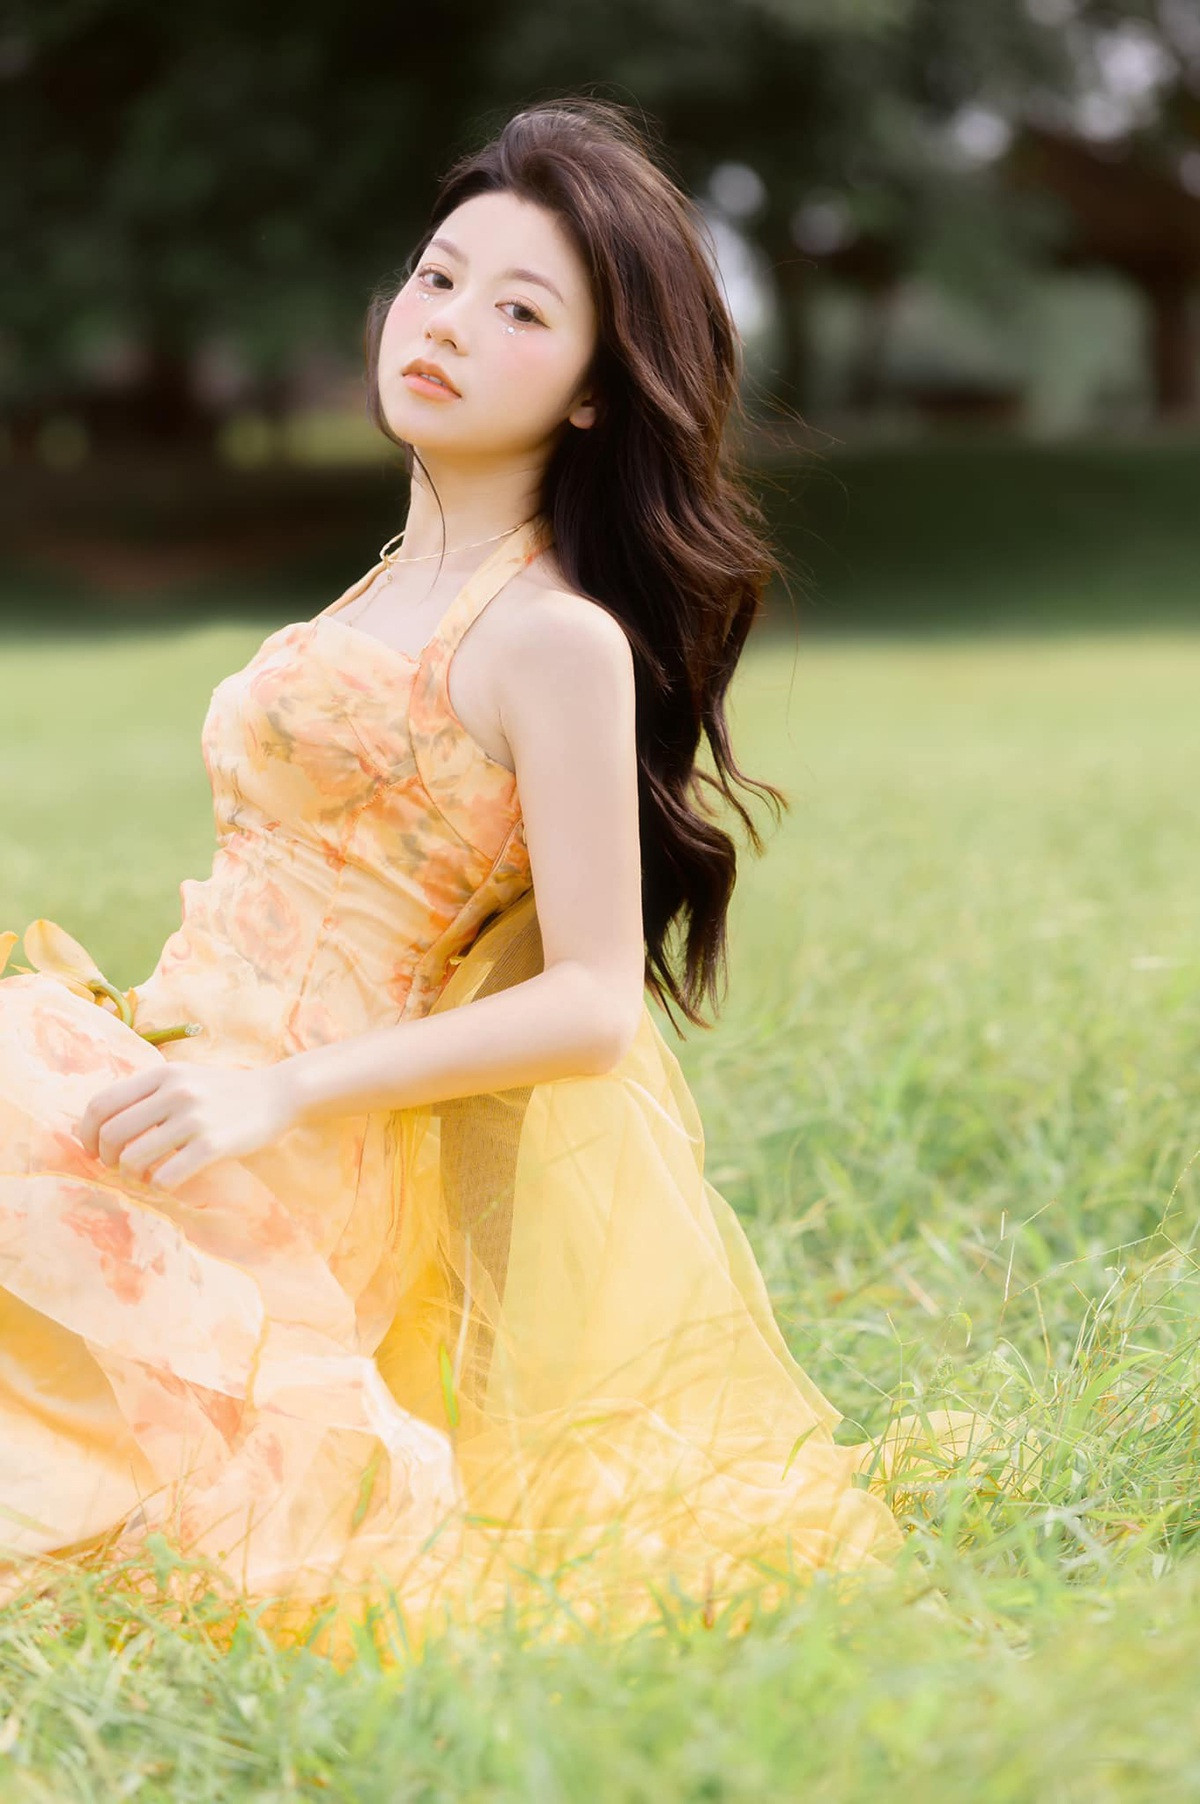 Bộ ảnh khoe vẻ đẹp ngọt ngào của hot girl Lạng Sơn - 4